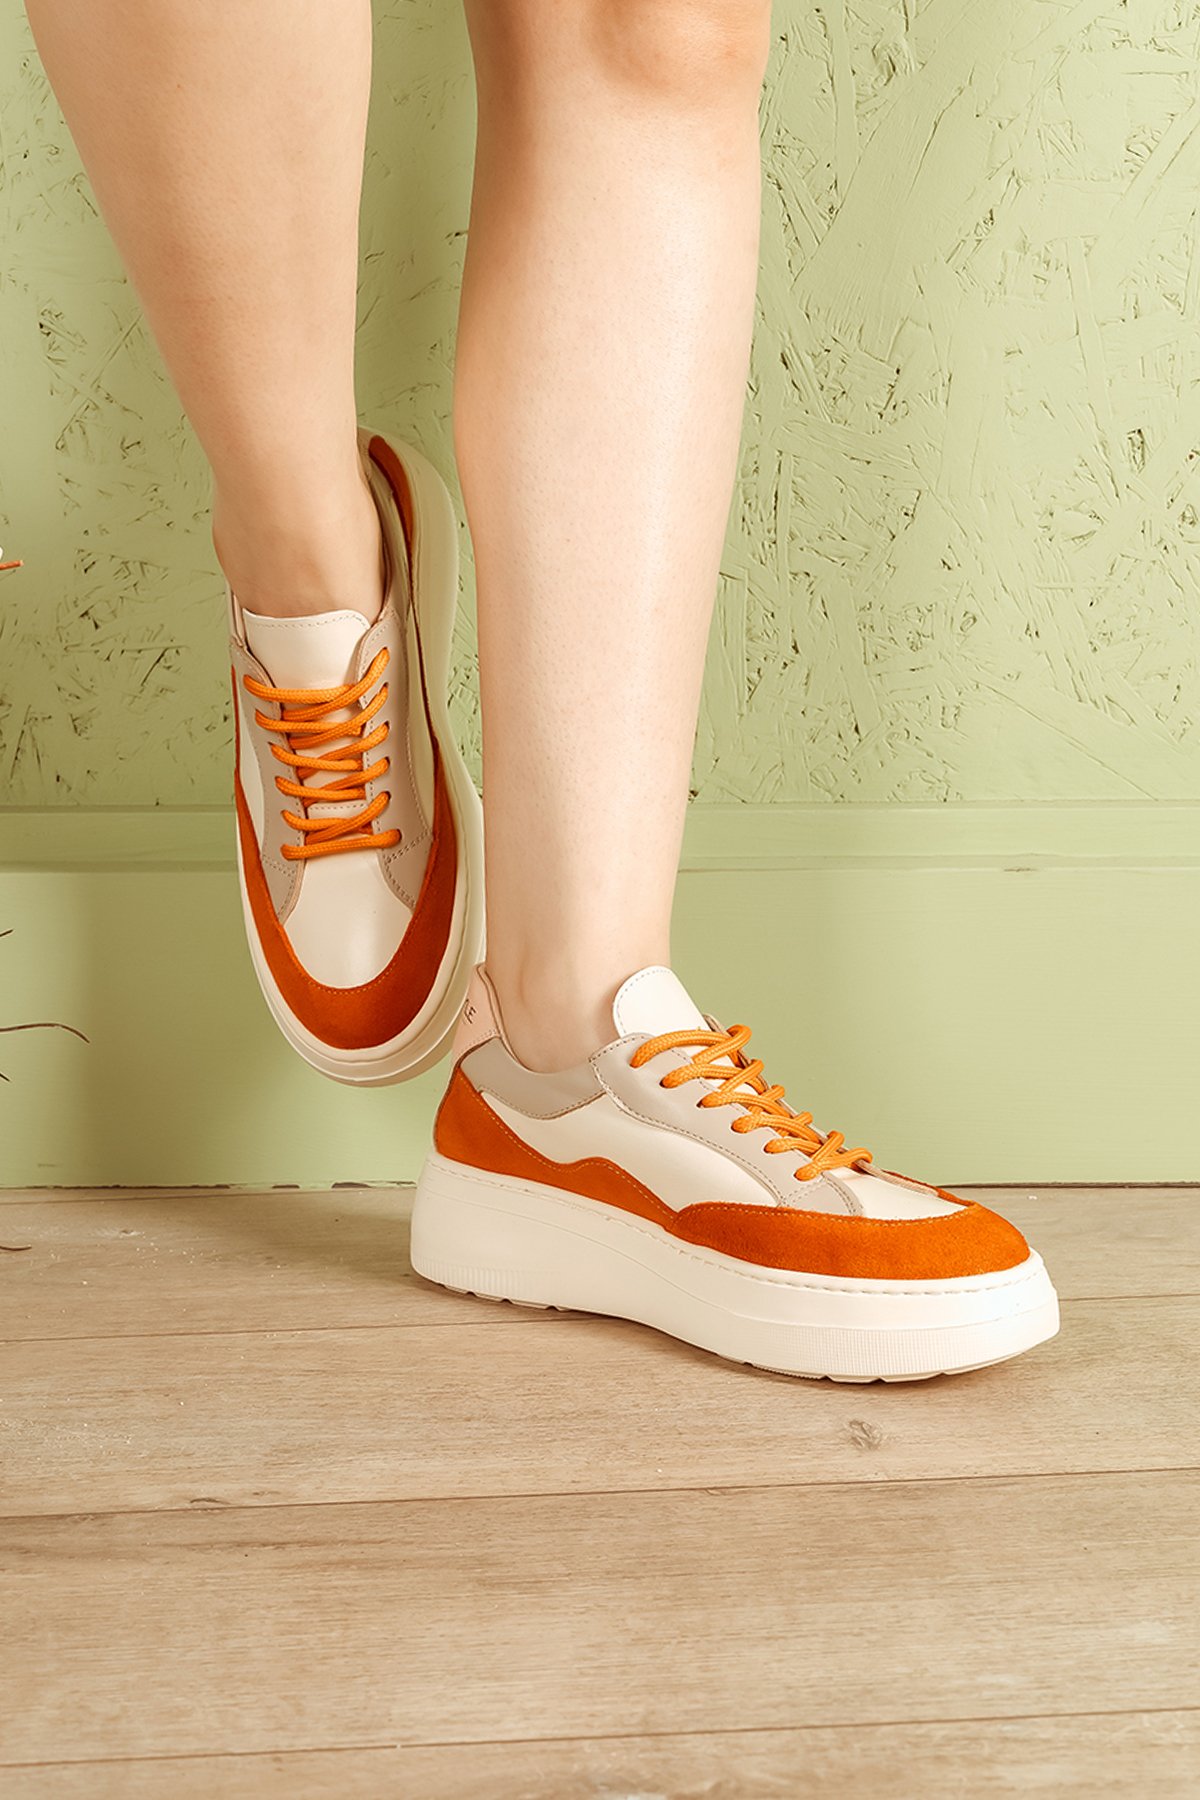 Cooliza Hakiki Deri Sneaker Yüksek Taban Renkli Rahat Günlük Kadın Spor Ayakkabı BEYAZ-YEŞİL - Beyaz-Oranj